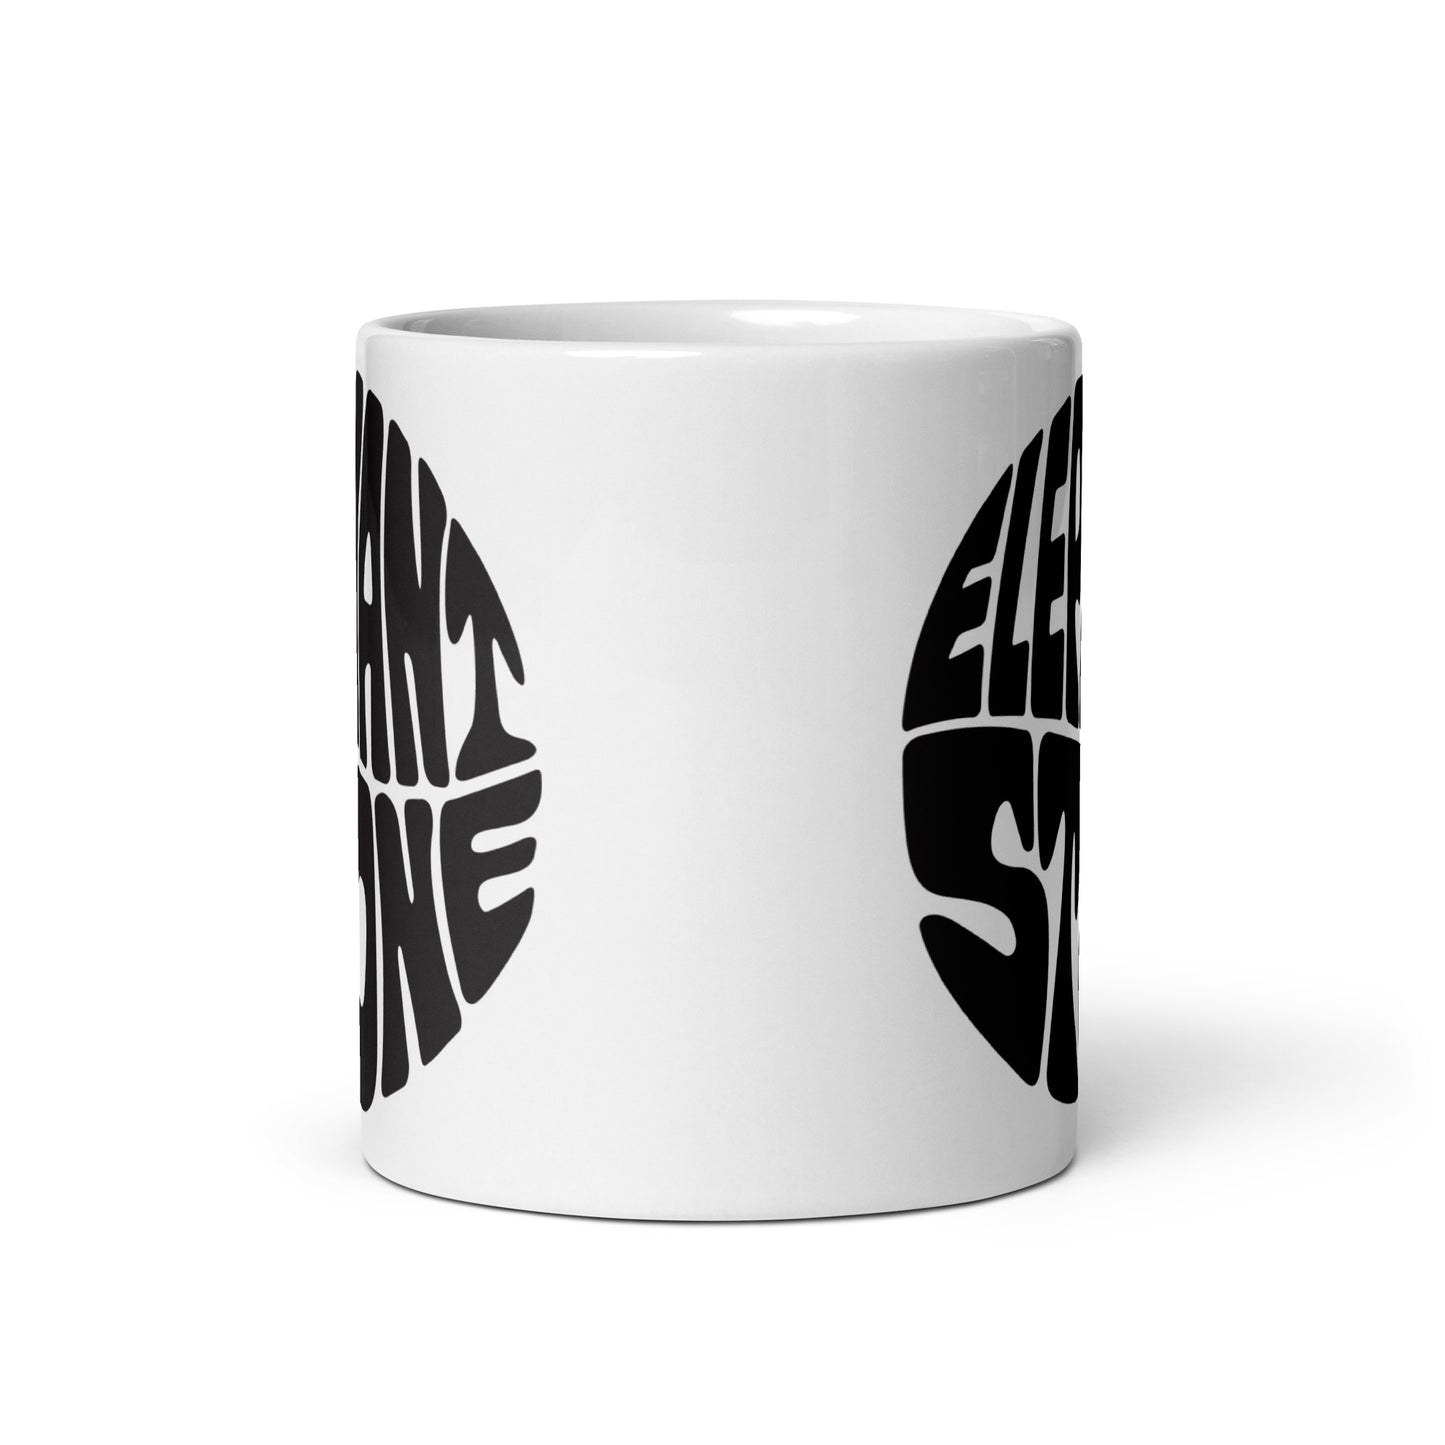 White glossy mug with Elephant Stone logo